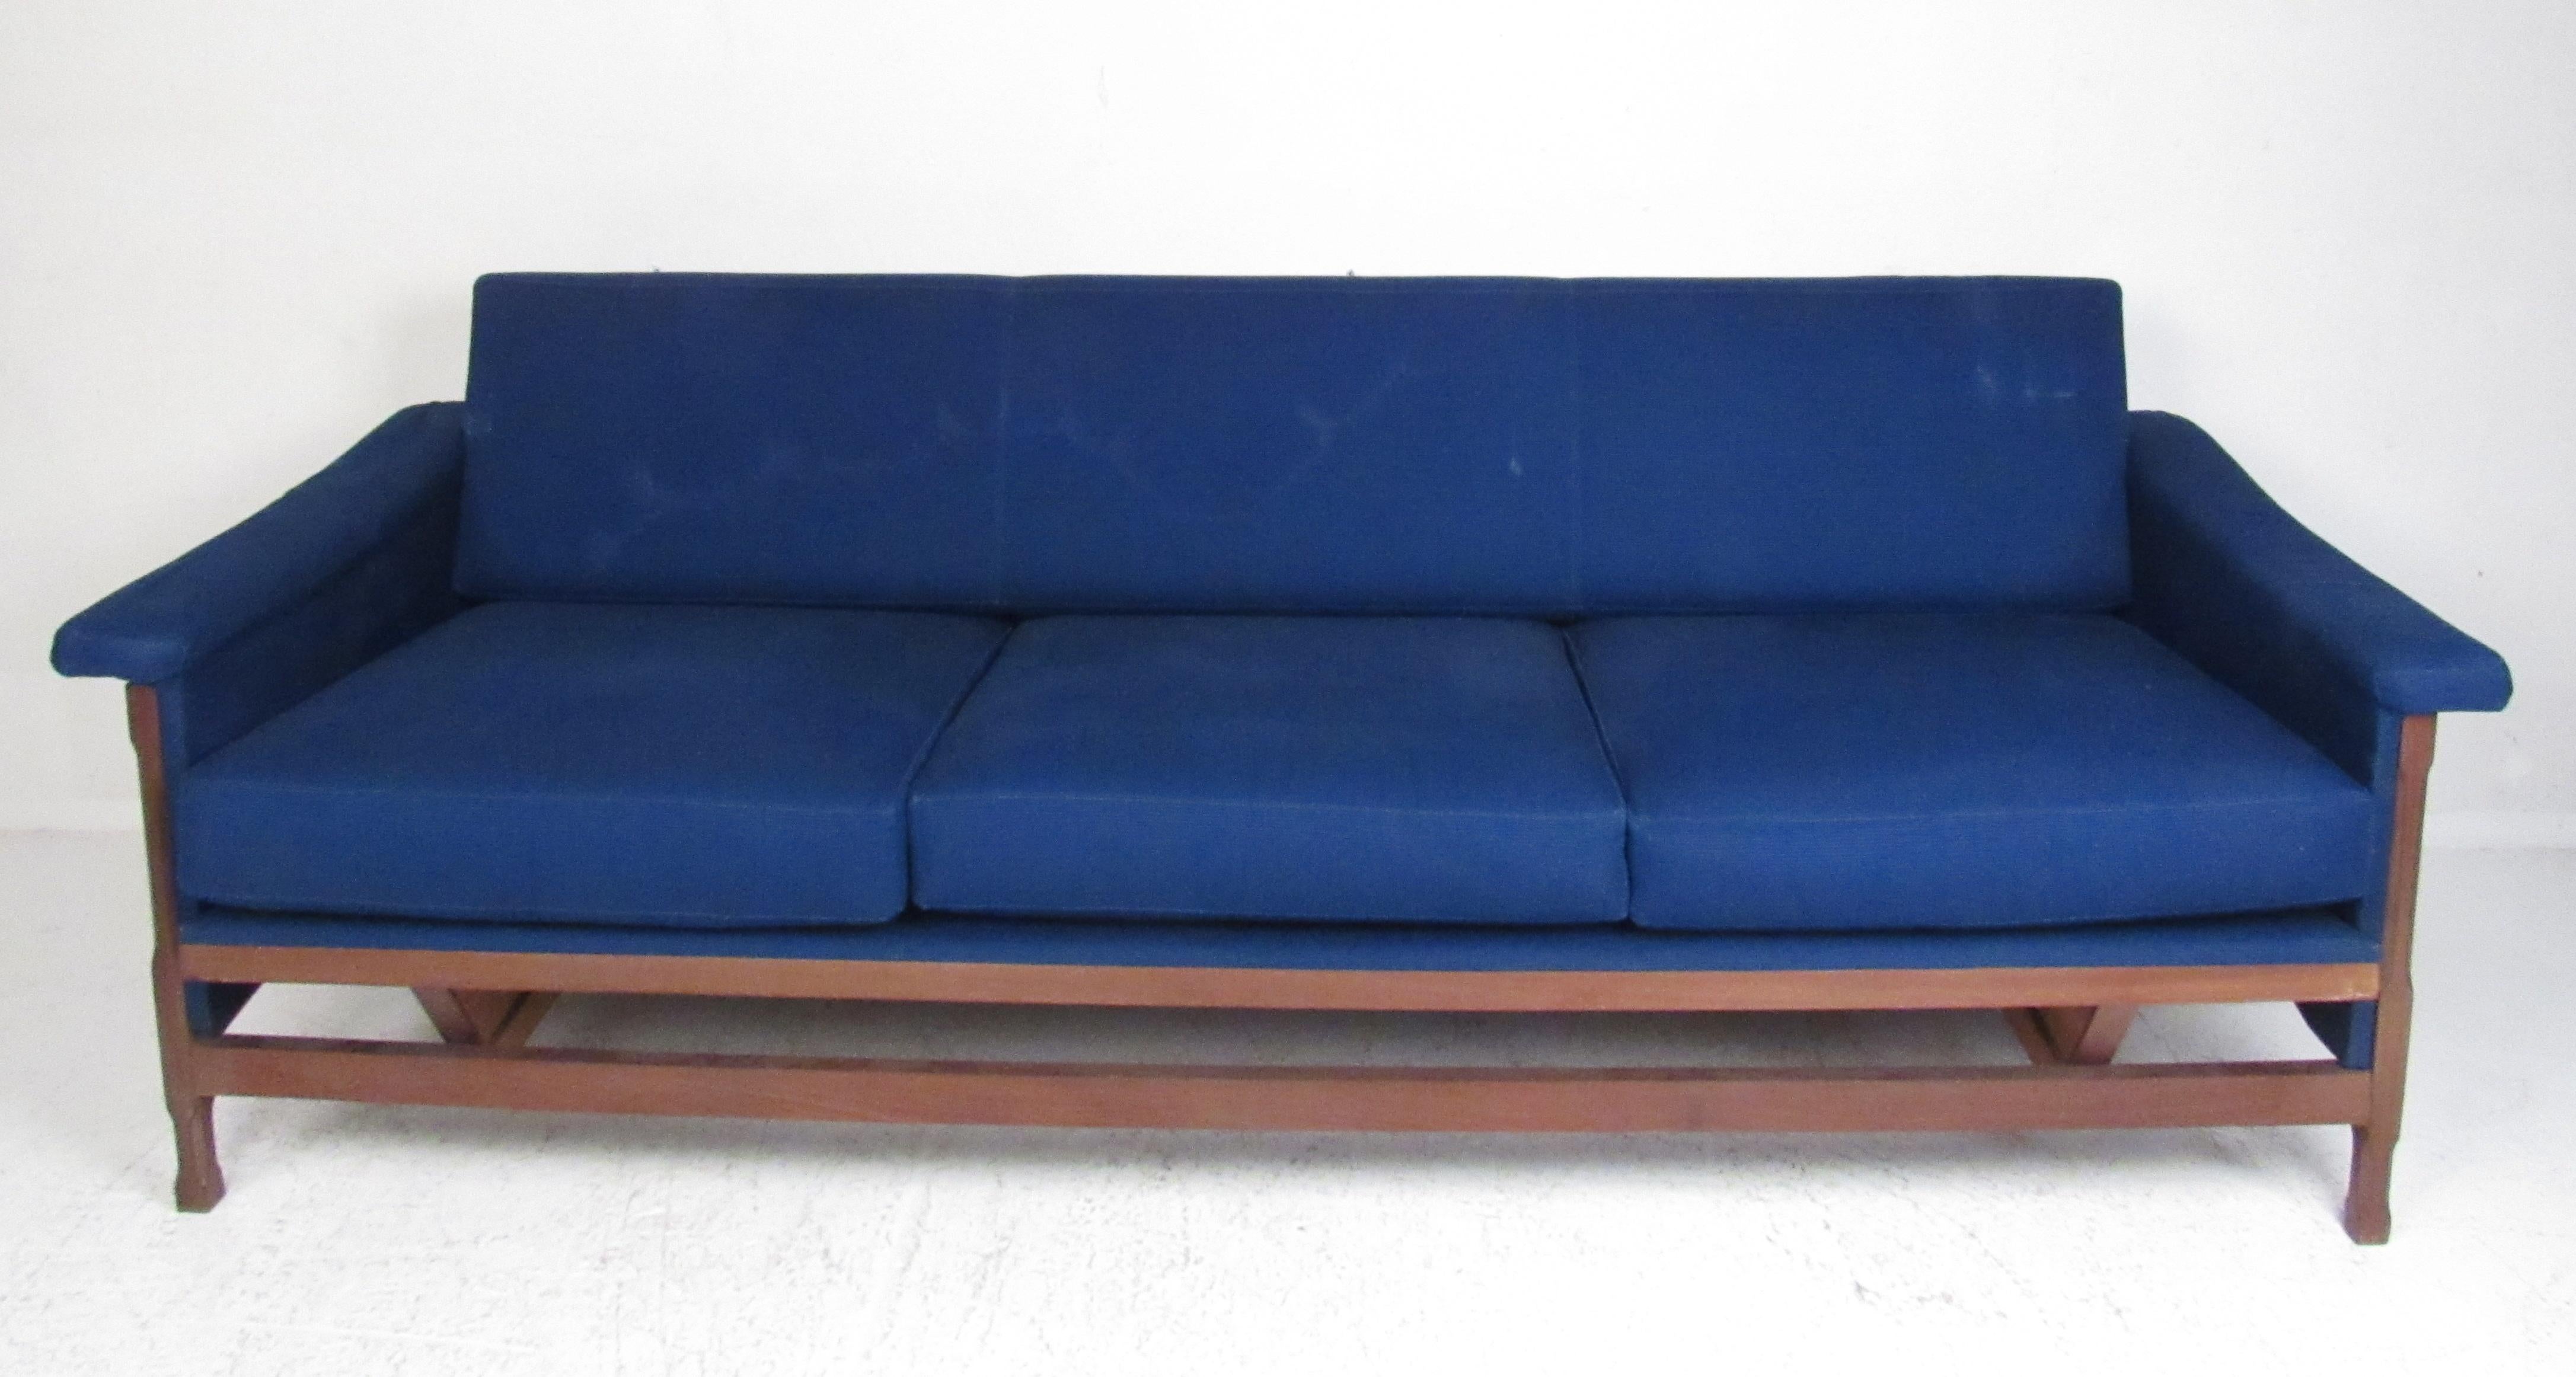 Dieses atemberaubende Set im modernen Vintage-Stil besteht aus zwei Sesseln und einem dreisitzigen Sofa. Der geschnitzte Nussbaumrahmen, die geflügelten Armlehnen und die königsblaue Polsterung unterstreichen den Midcentury-Charme. Dieses elegante